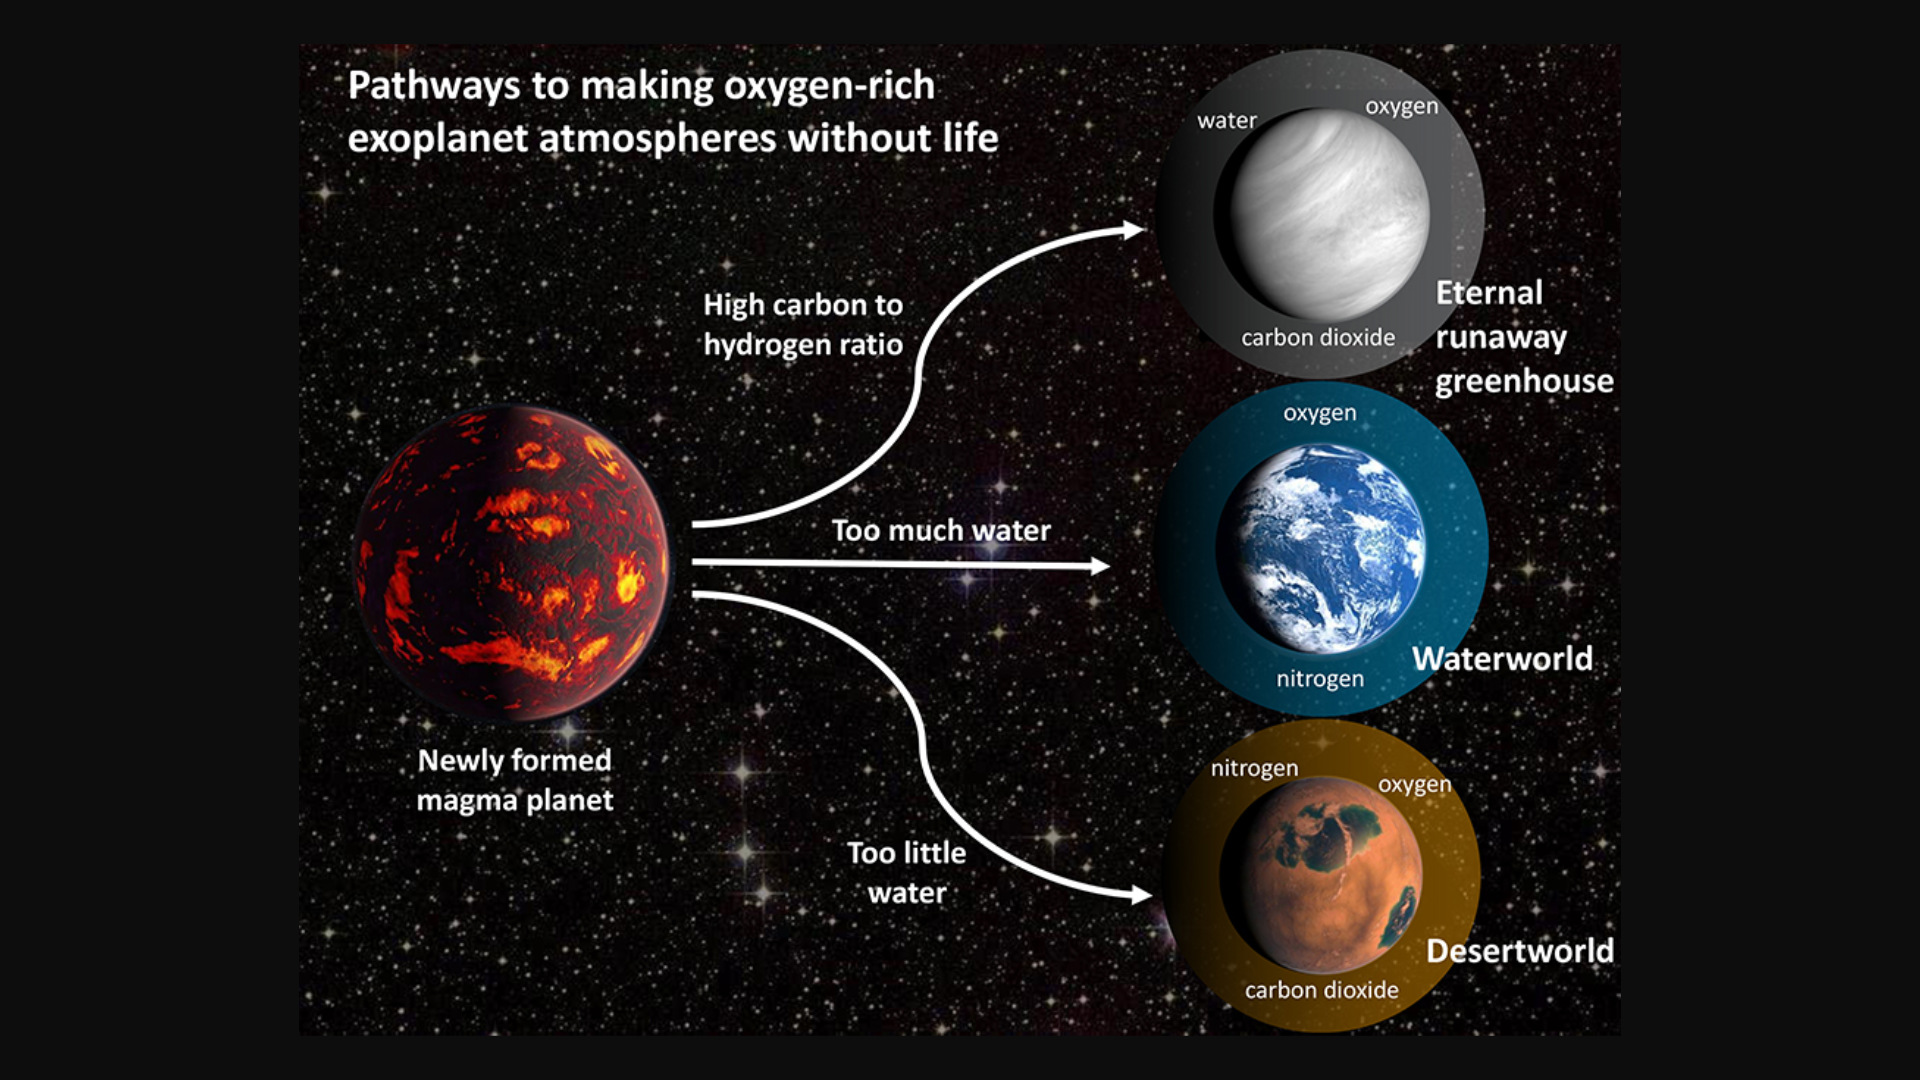 https://www.numerama.com/wp-content/uploads/2021/04/exoplanetes-oxygene.jpg